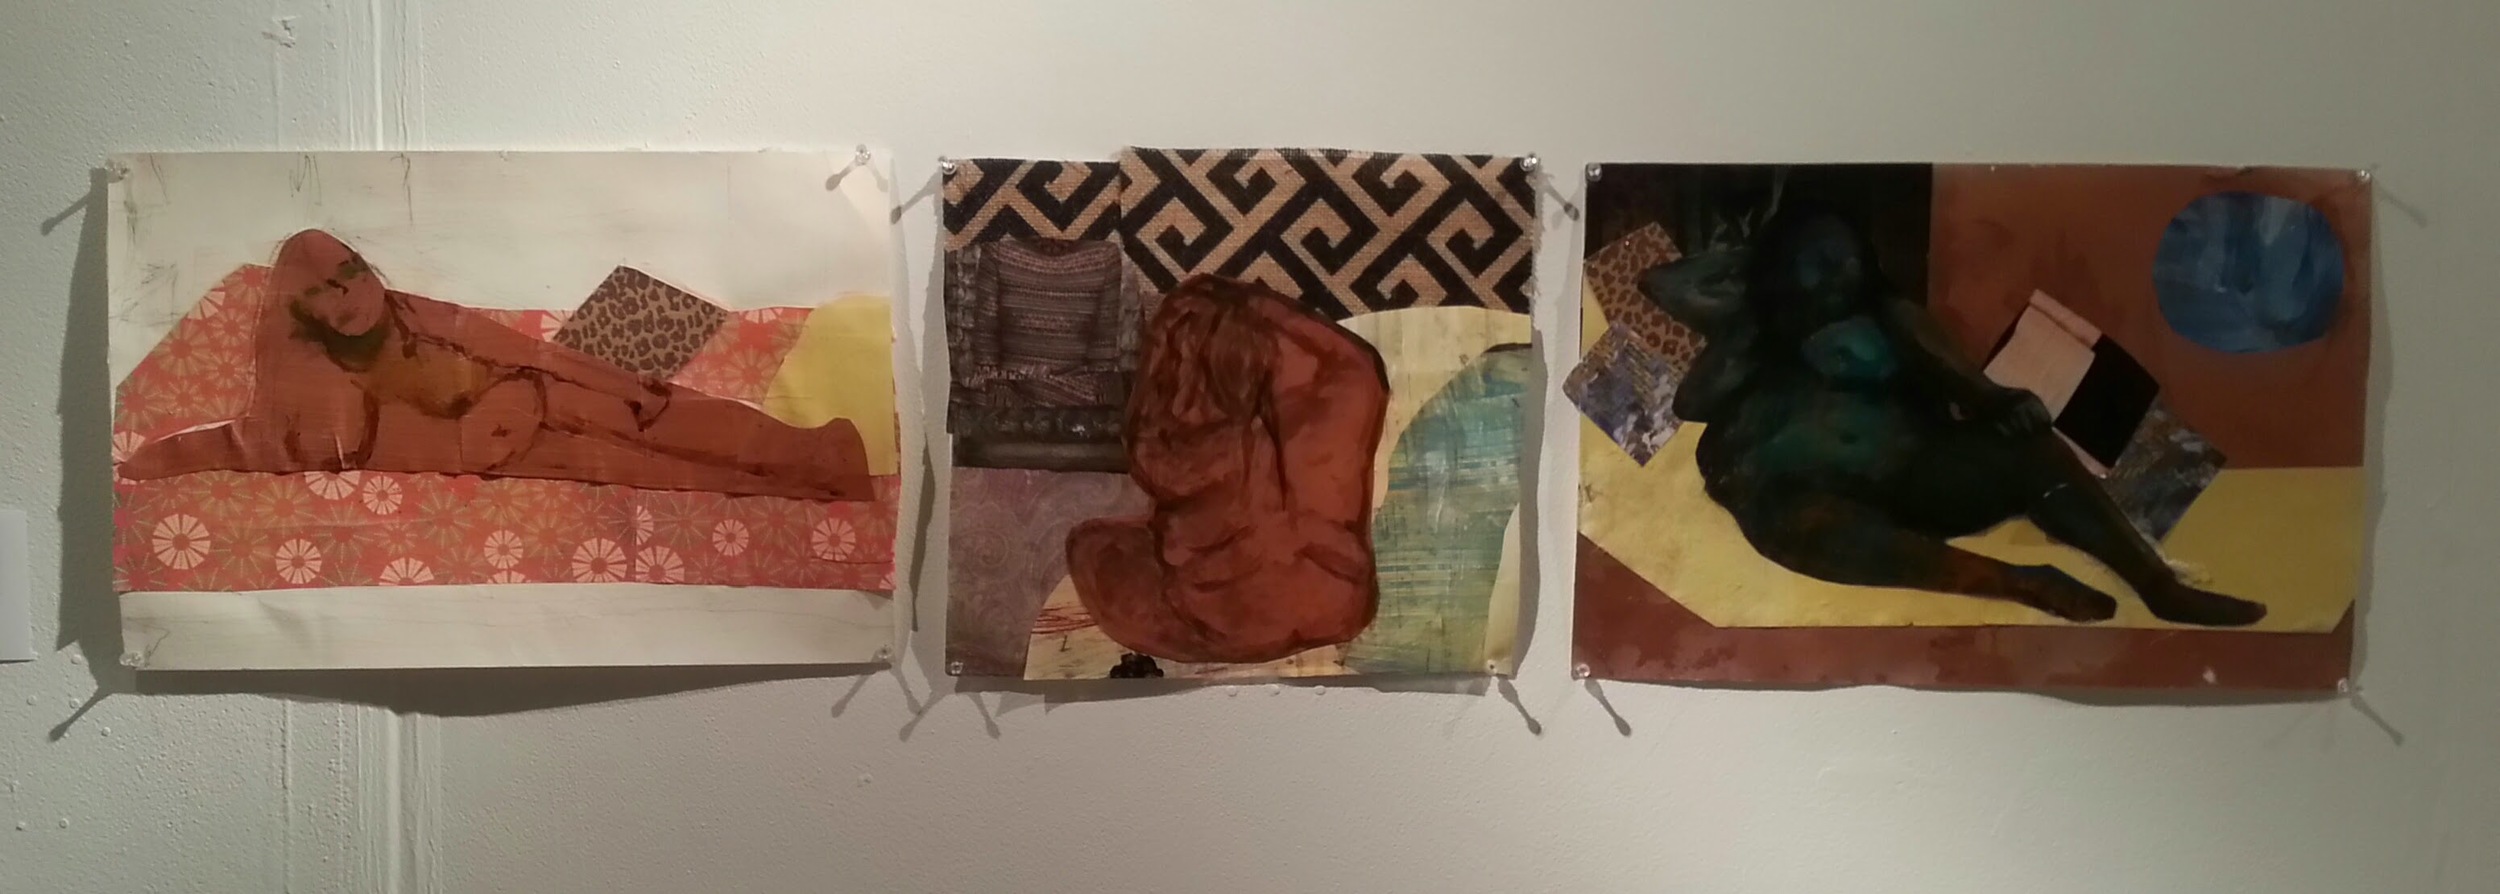 Percolate (triptych), 2015